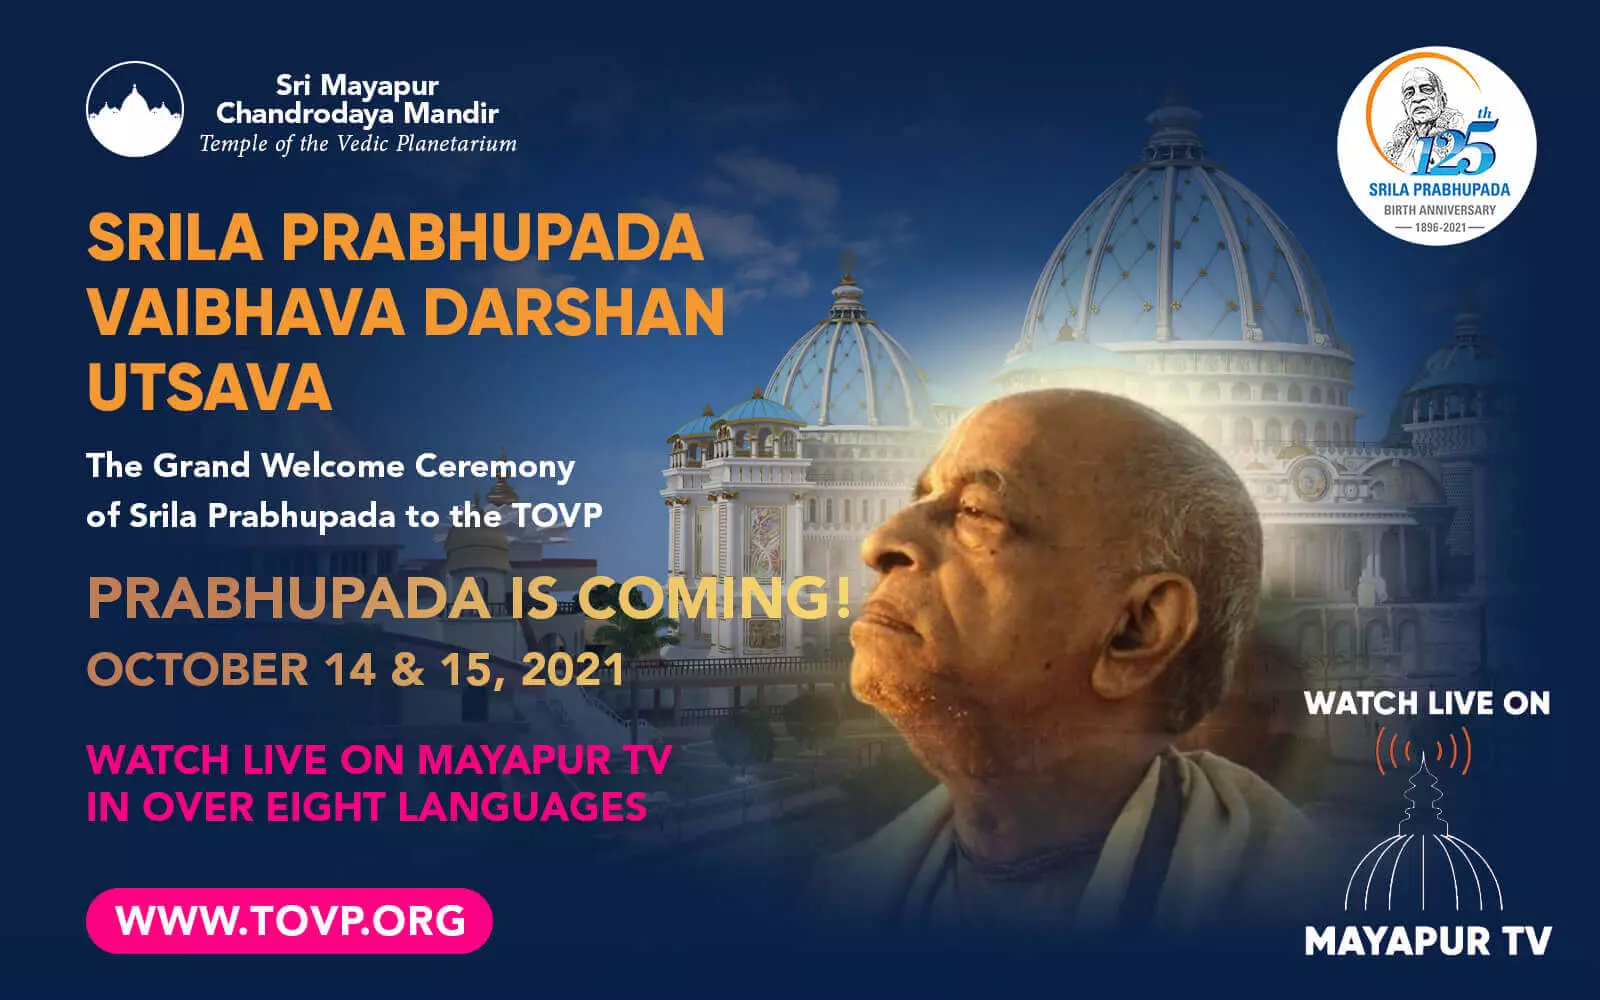 ПРАБХУПАДА ВСТРЕЧАЕТСЯ В ХВП! Смотрите в прямом эфире на Mayapur TV, 14 и 15 октября